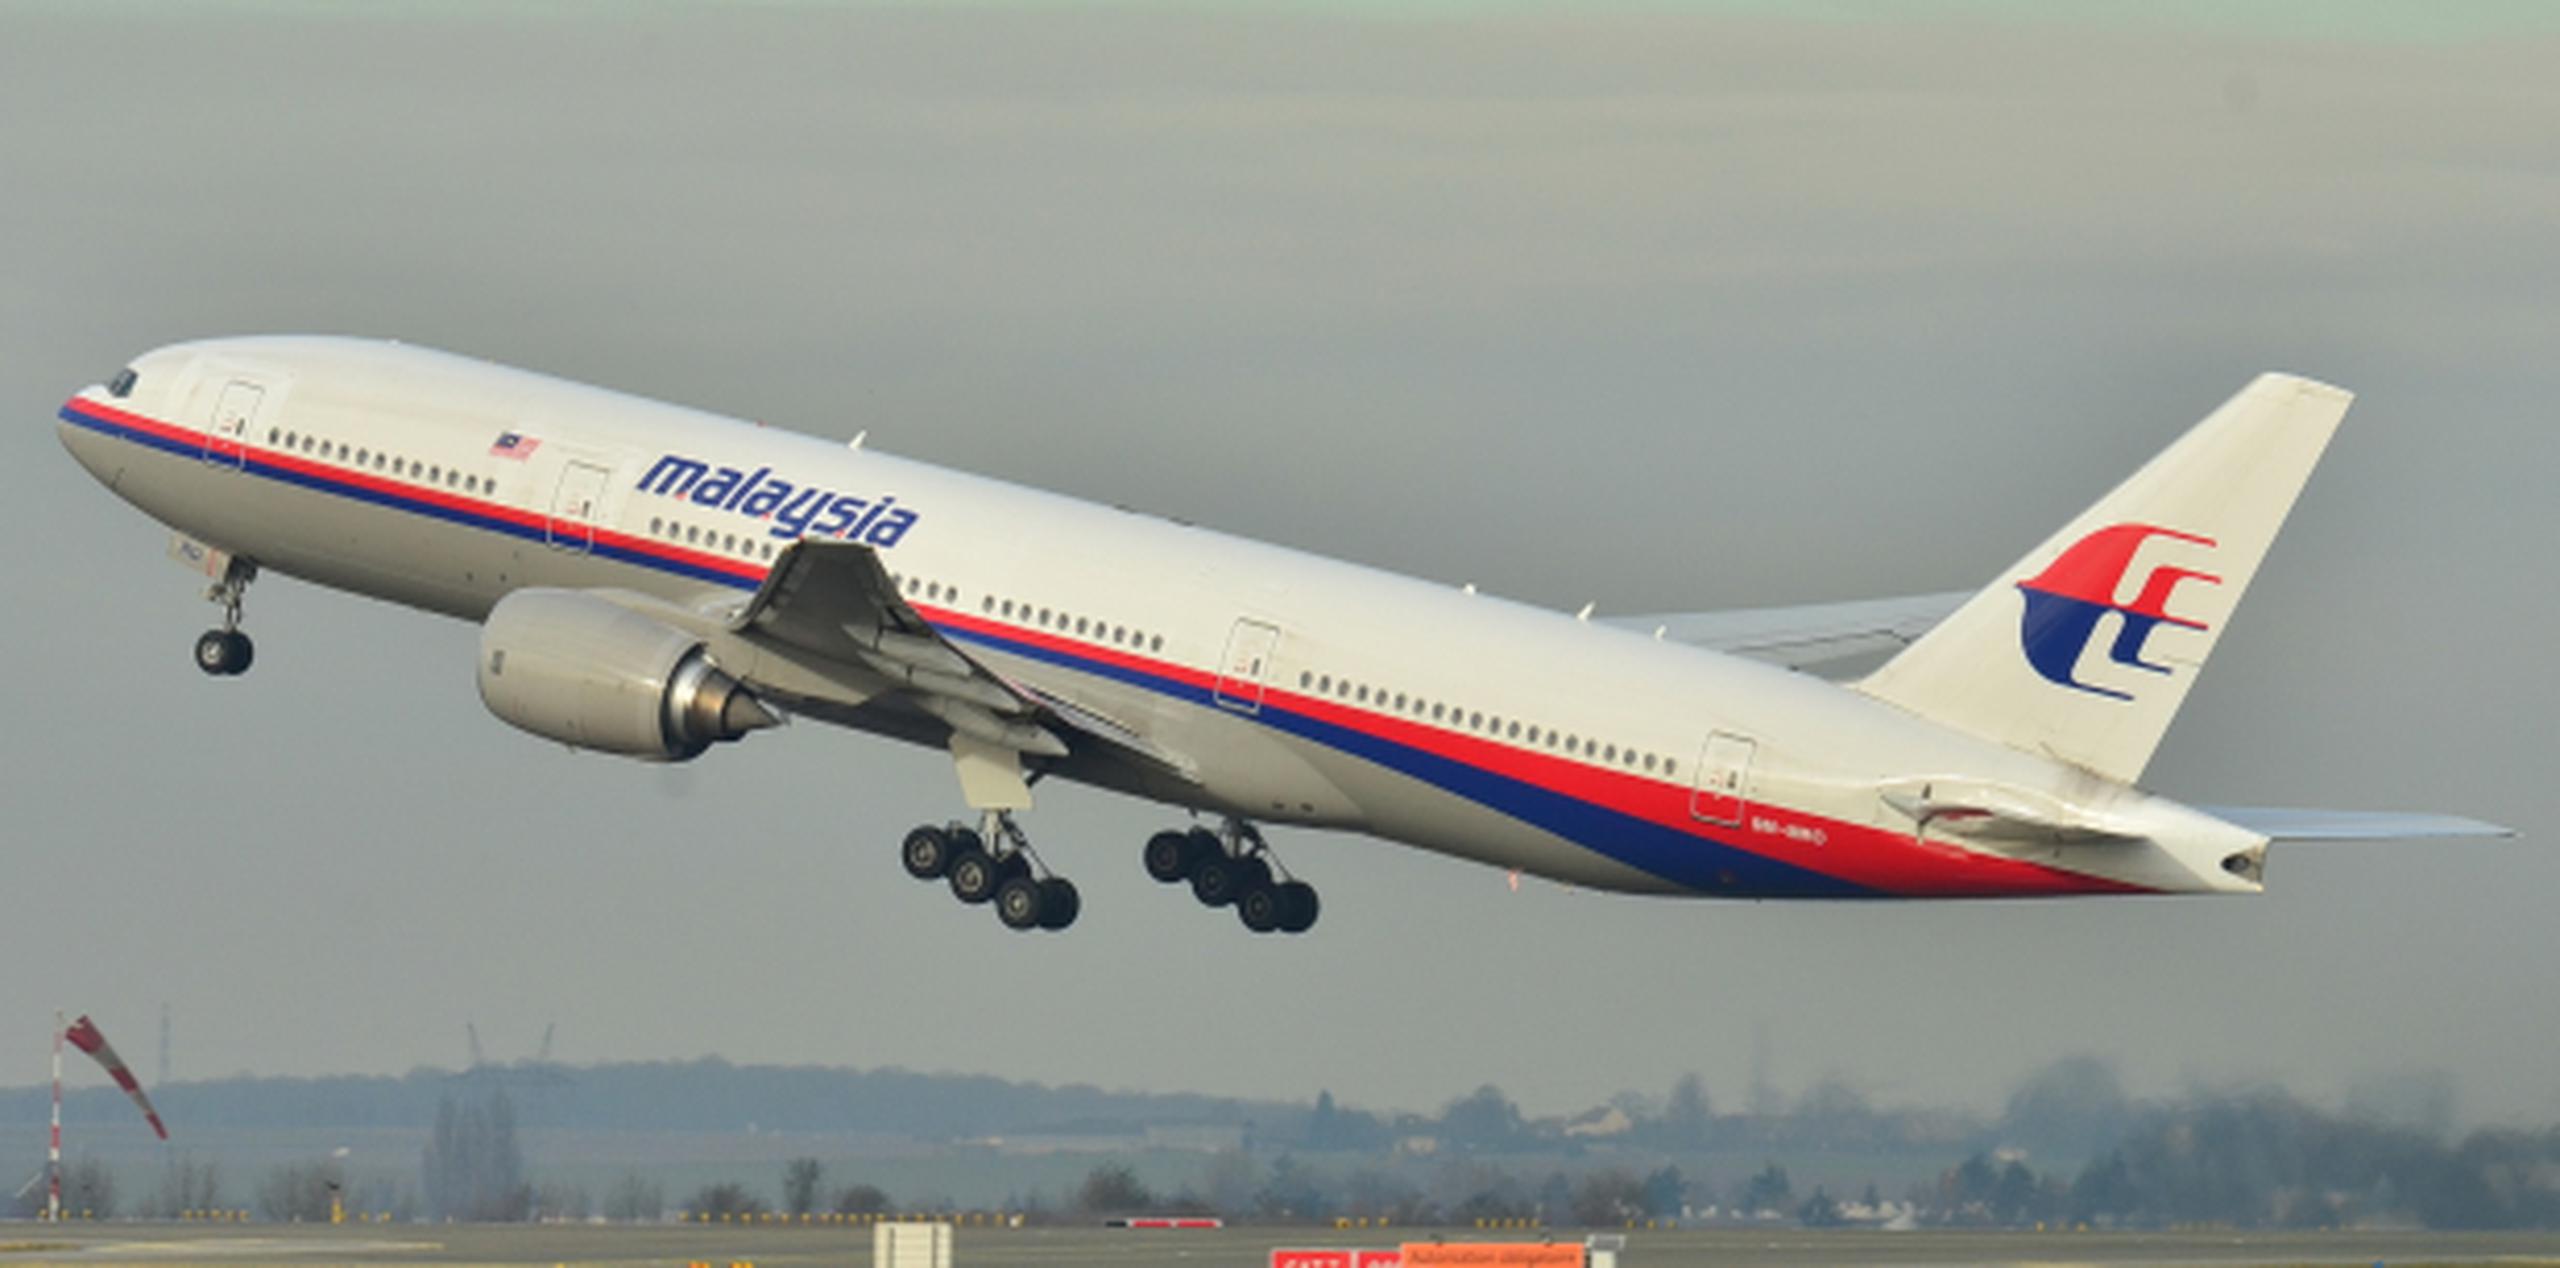 El vuelo MH370 de Malaysia Airlines desapareció el 8 de marzo de 2014 con 239 personas a bordo. (Archivo)